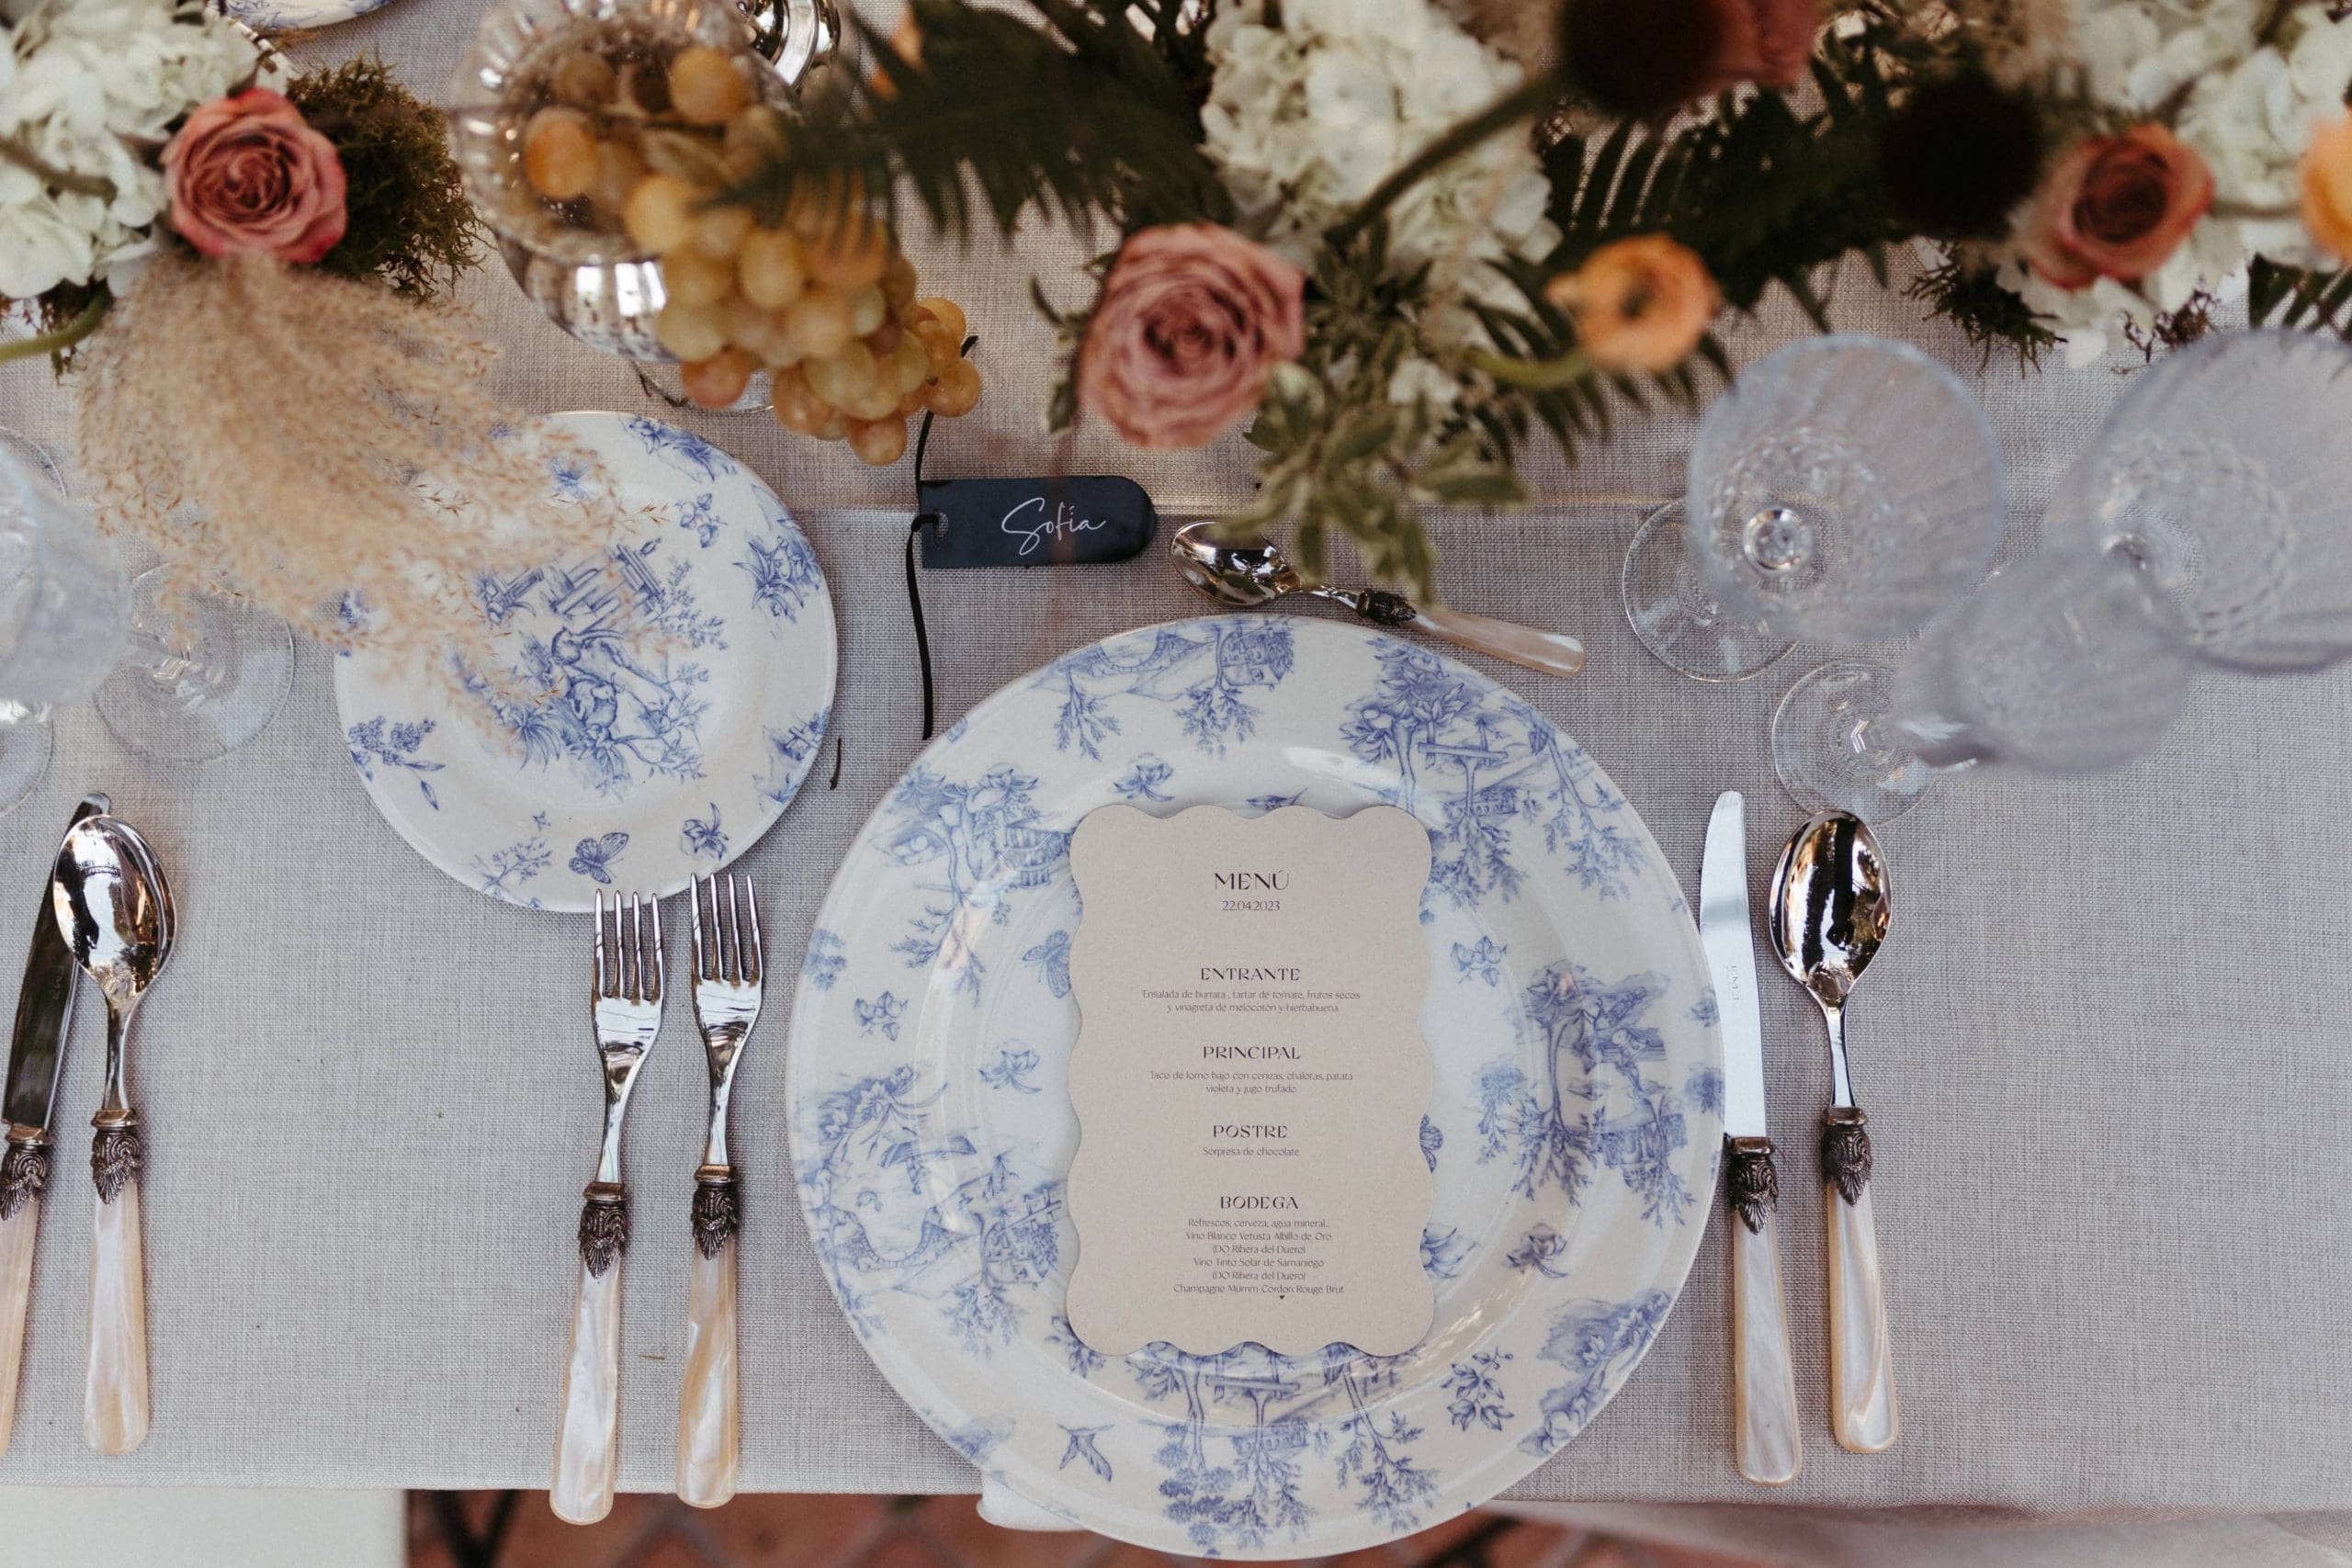 Mesa de boda decorada por Bouclé Weddings, con vajilla en tonos azules, cubertería de plata, motivos florales y uvas.